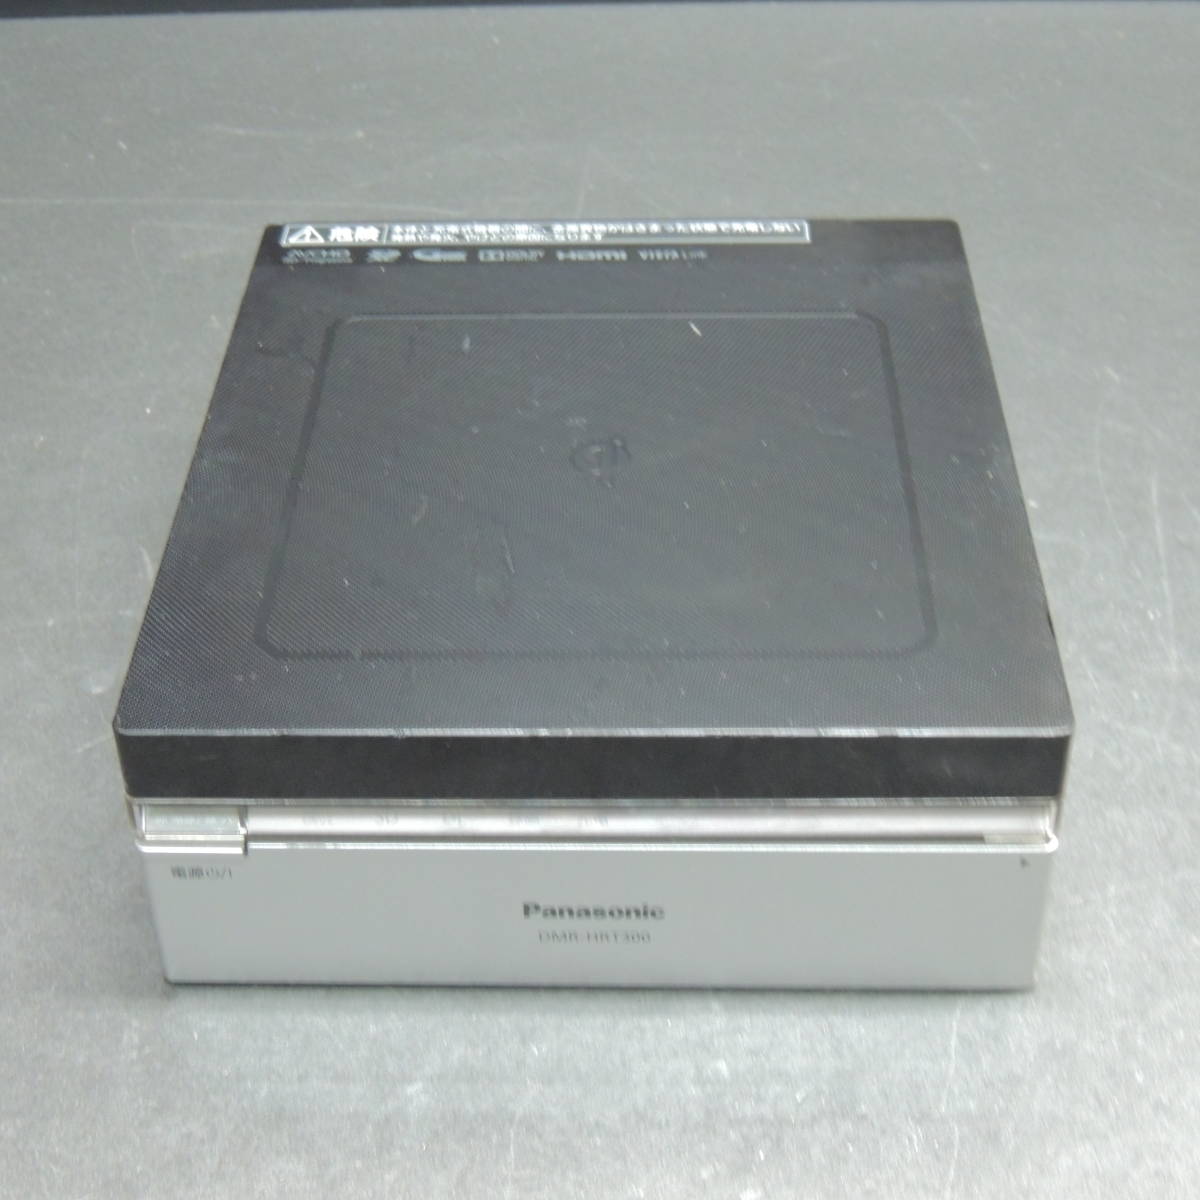 【検品済み】Panasonic HDDレコーダー　DMR-HRT300 管理:R-29_画像1